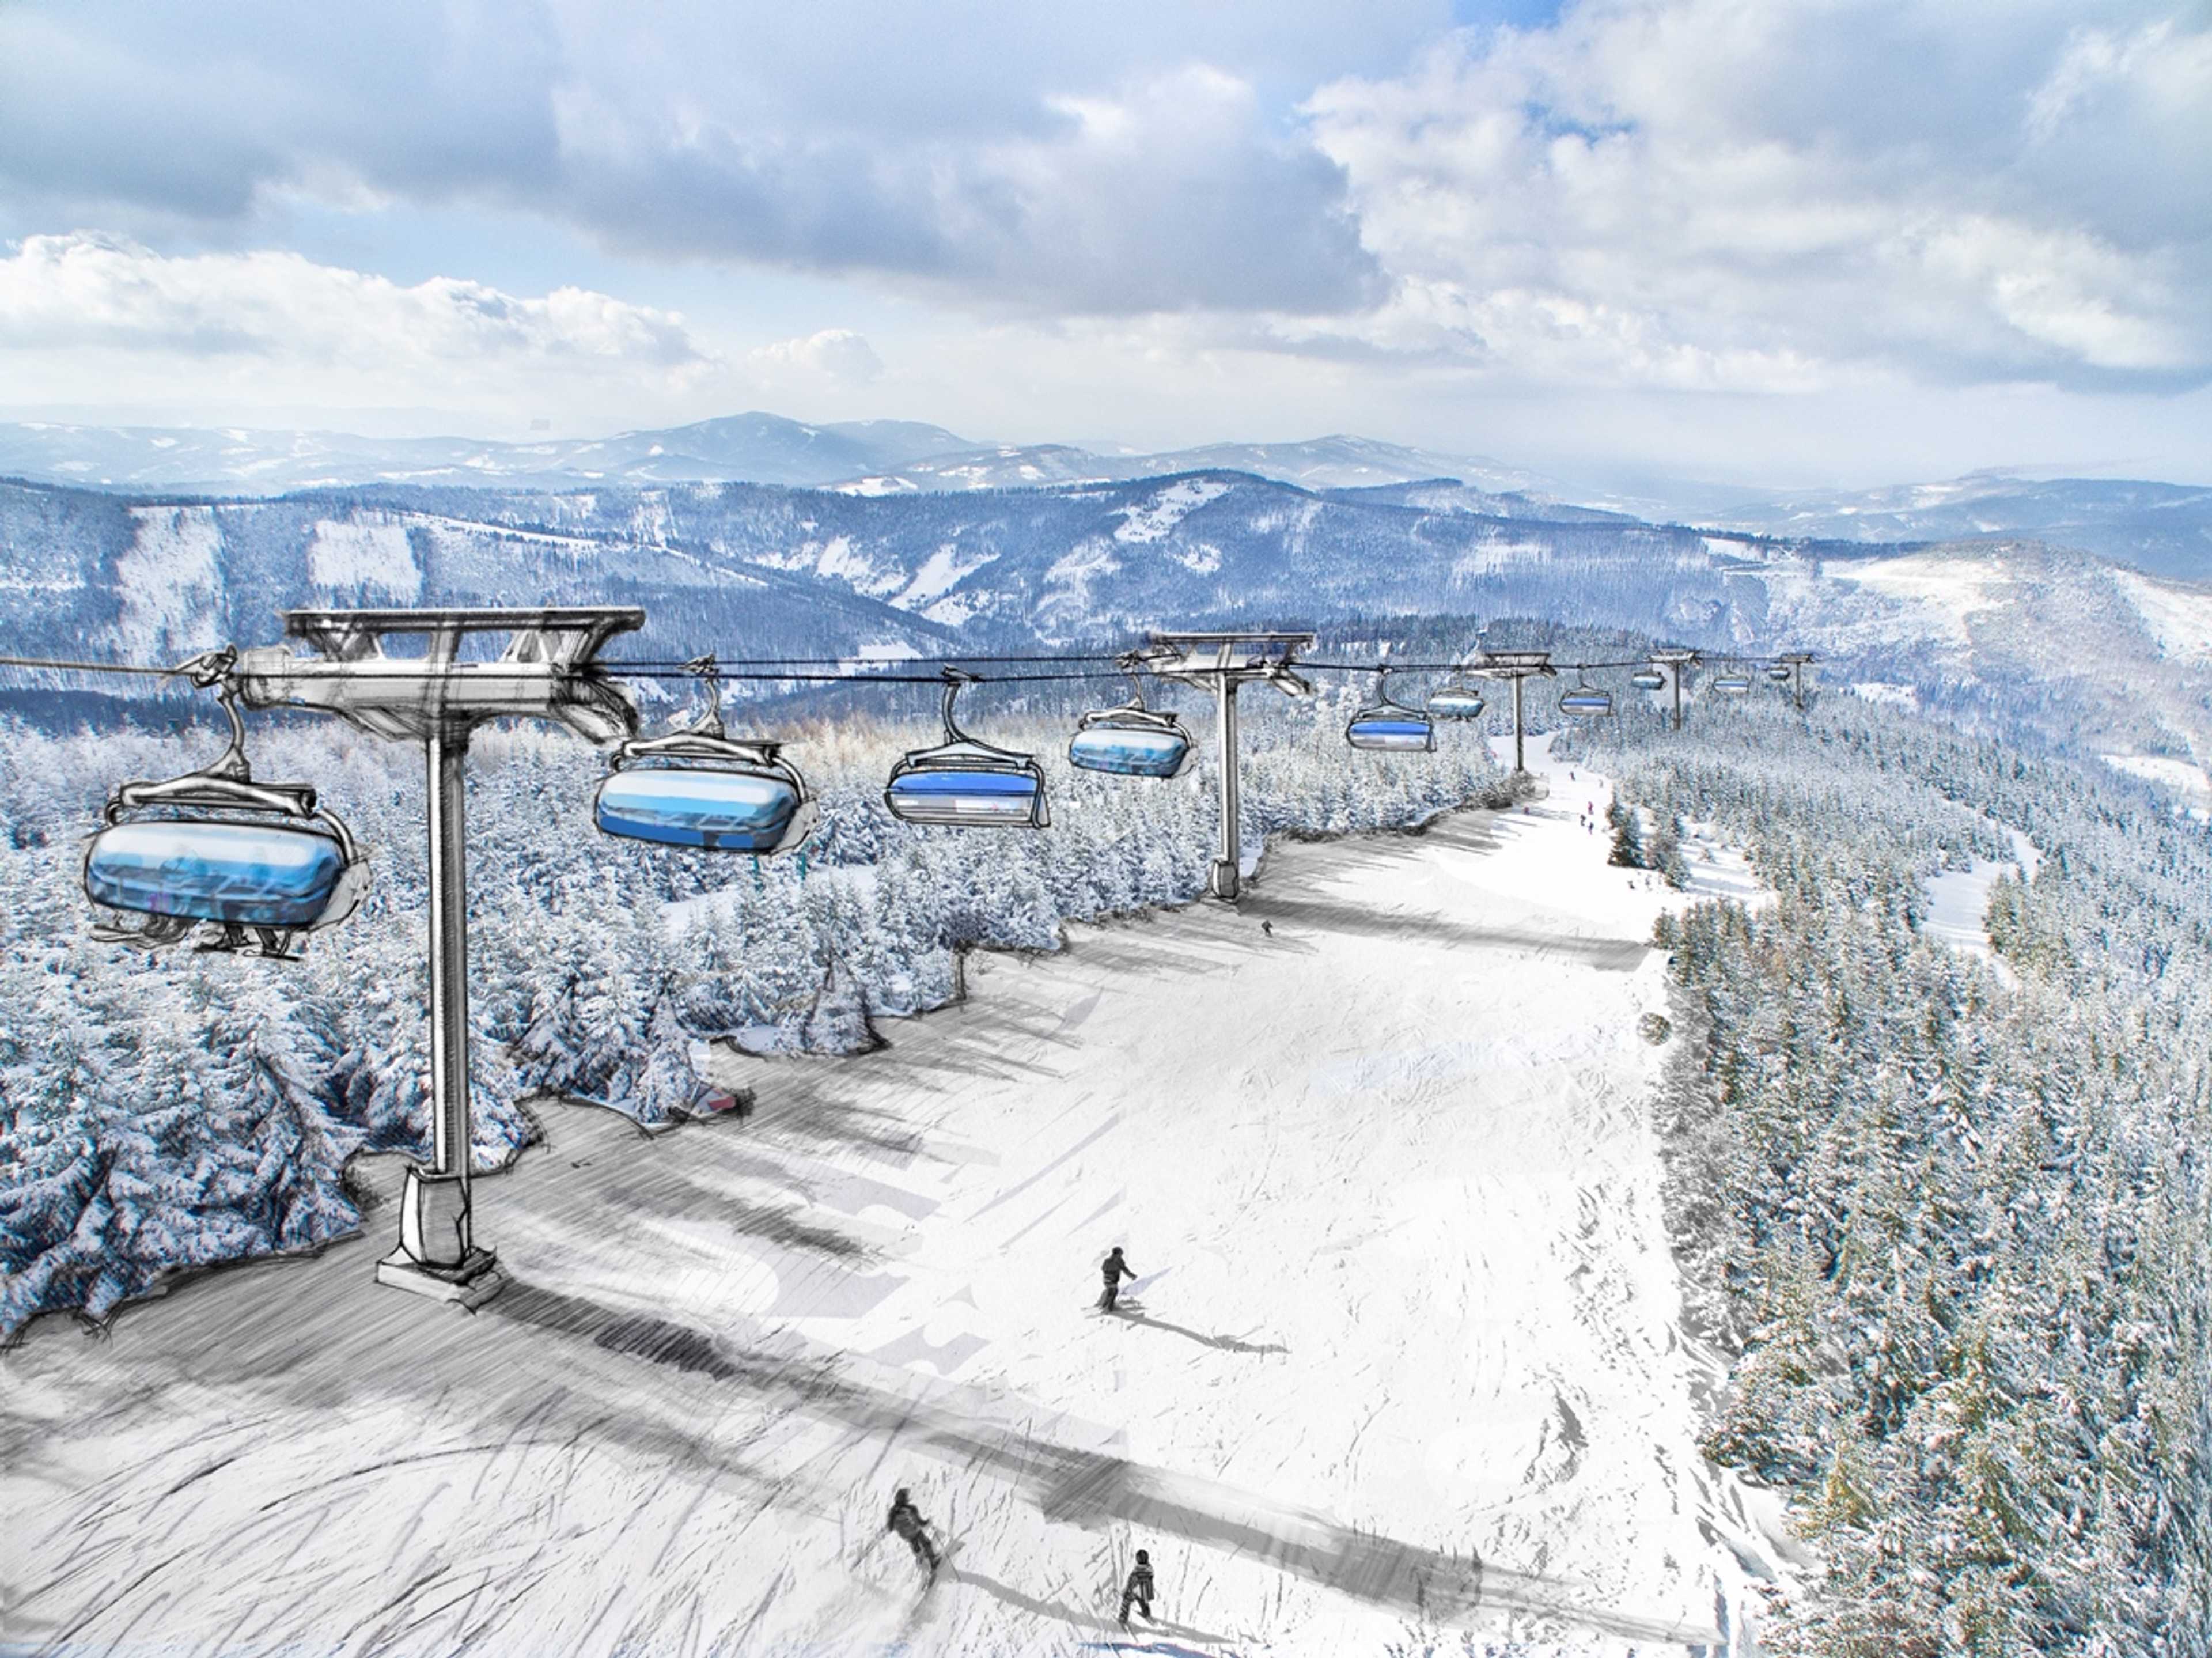 Wizualizacja nowej kolei krzesełkowej, Szczyrk Mountain Resort